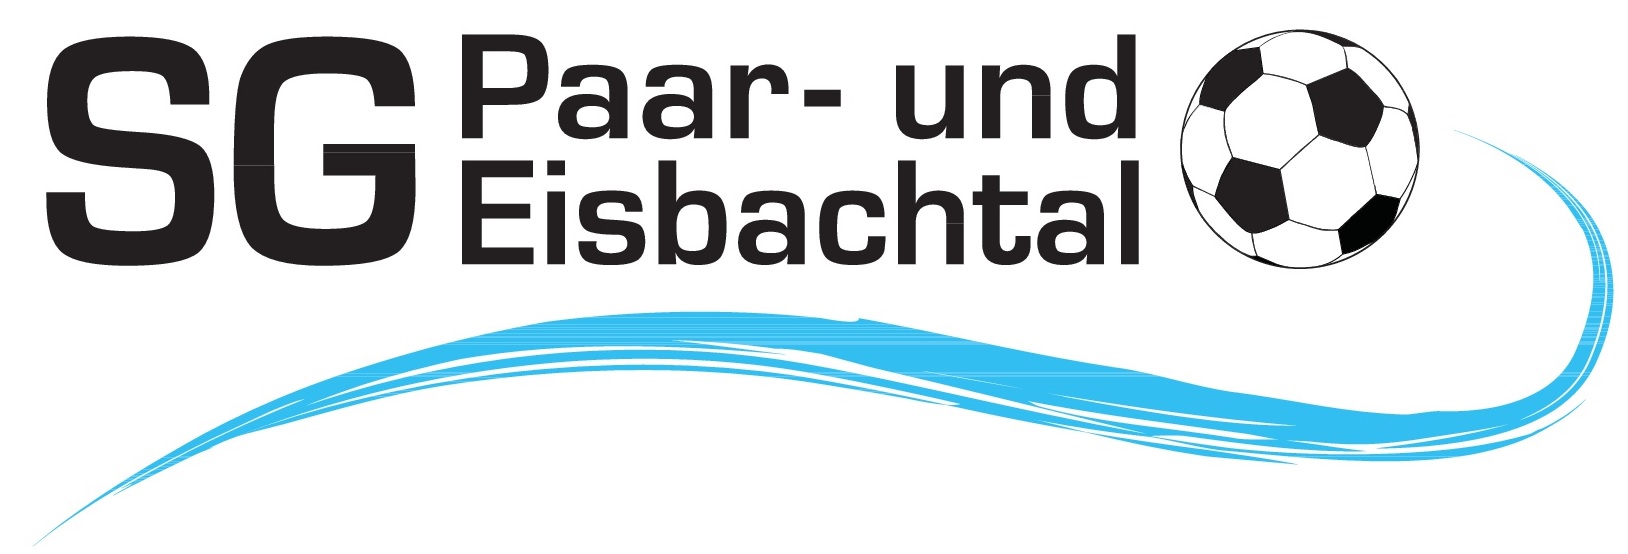 Logo SG Paar und Eisbachtal